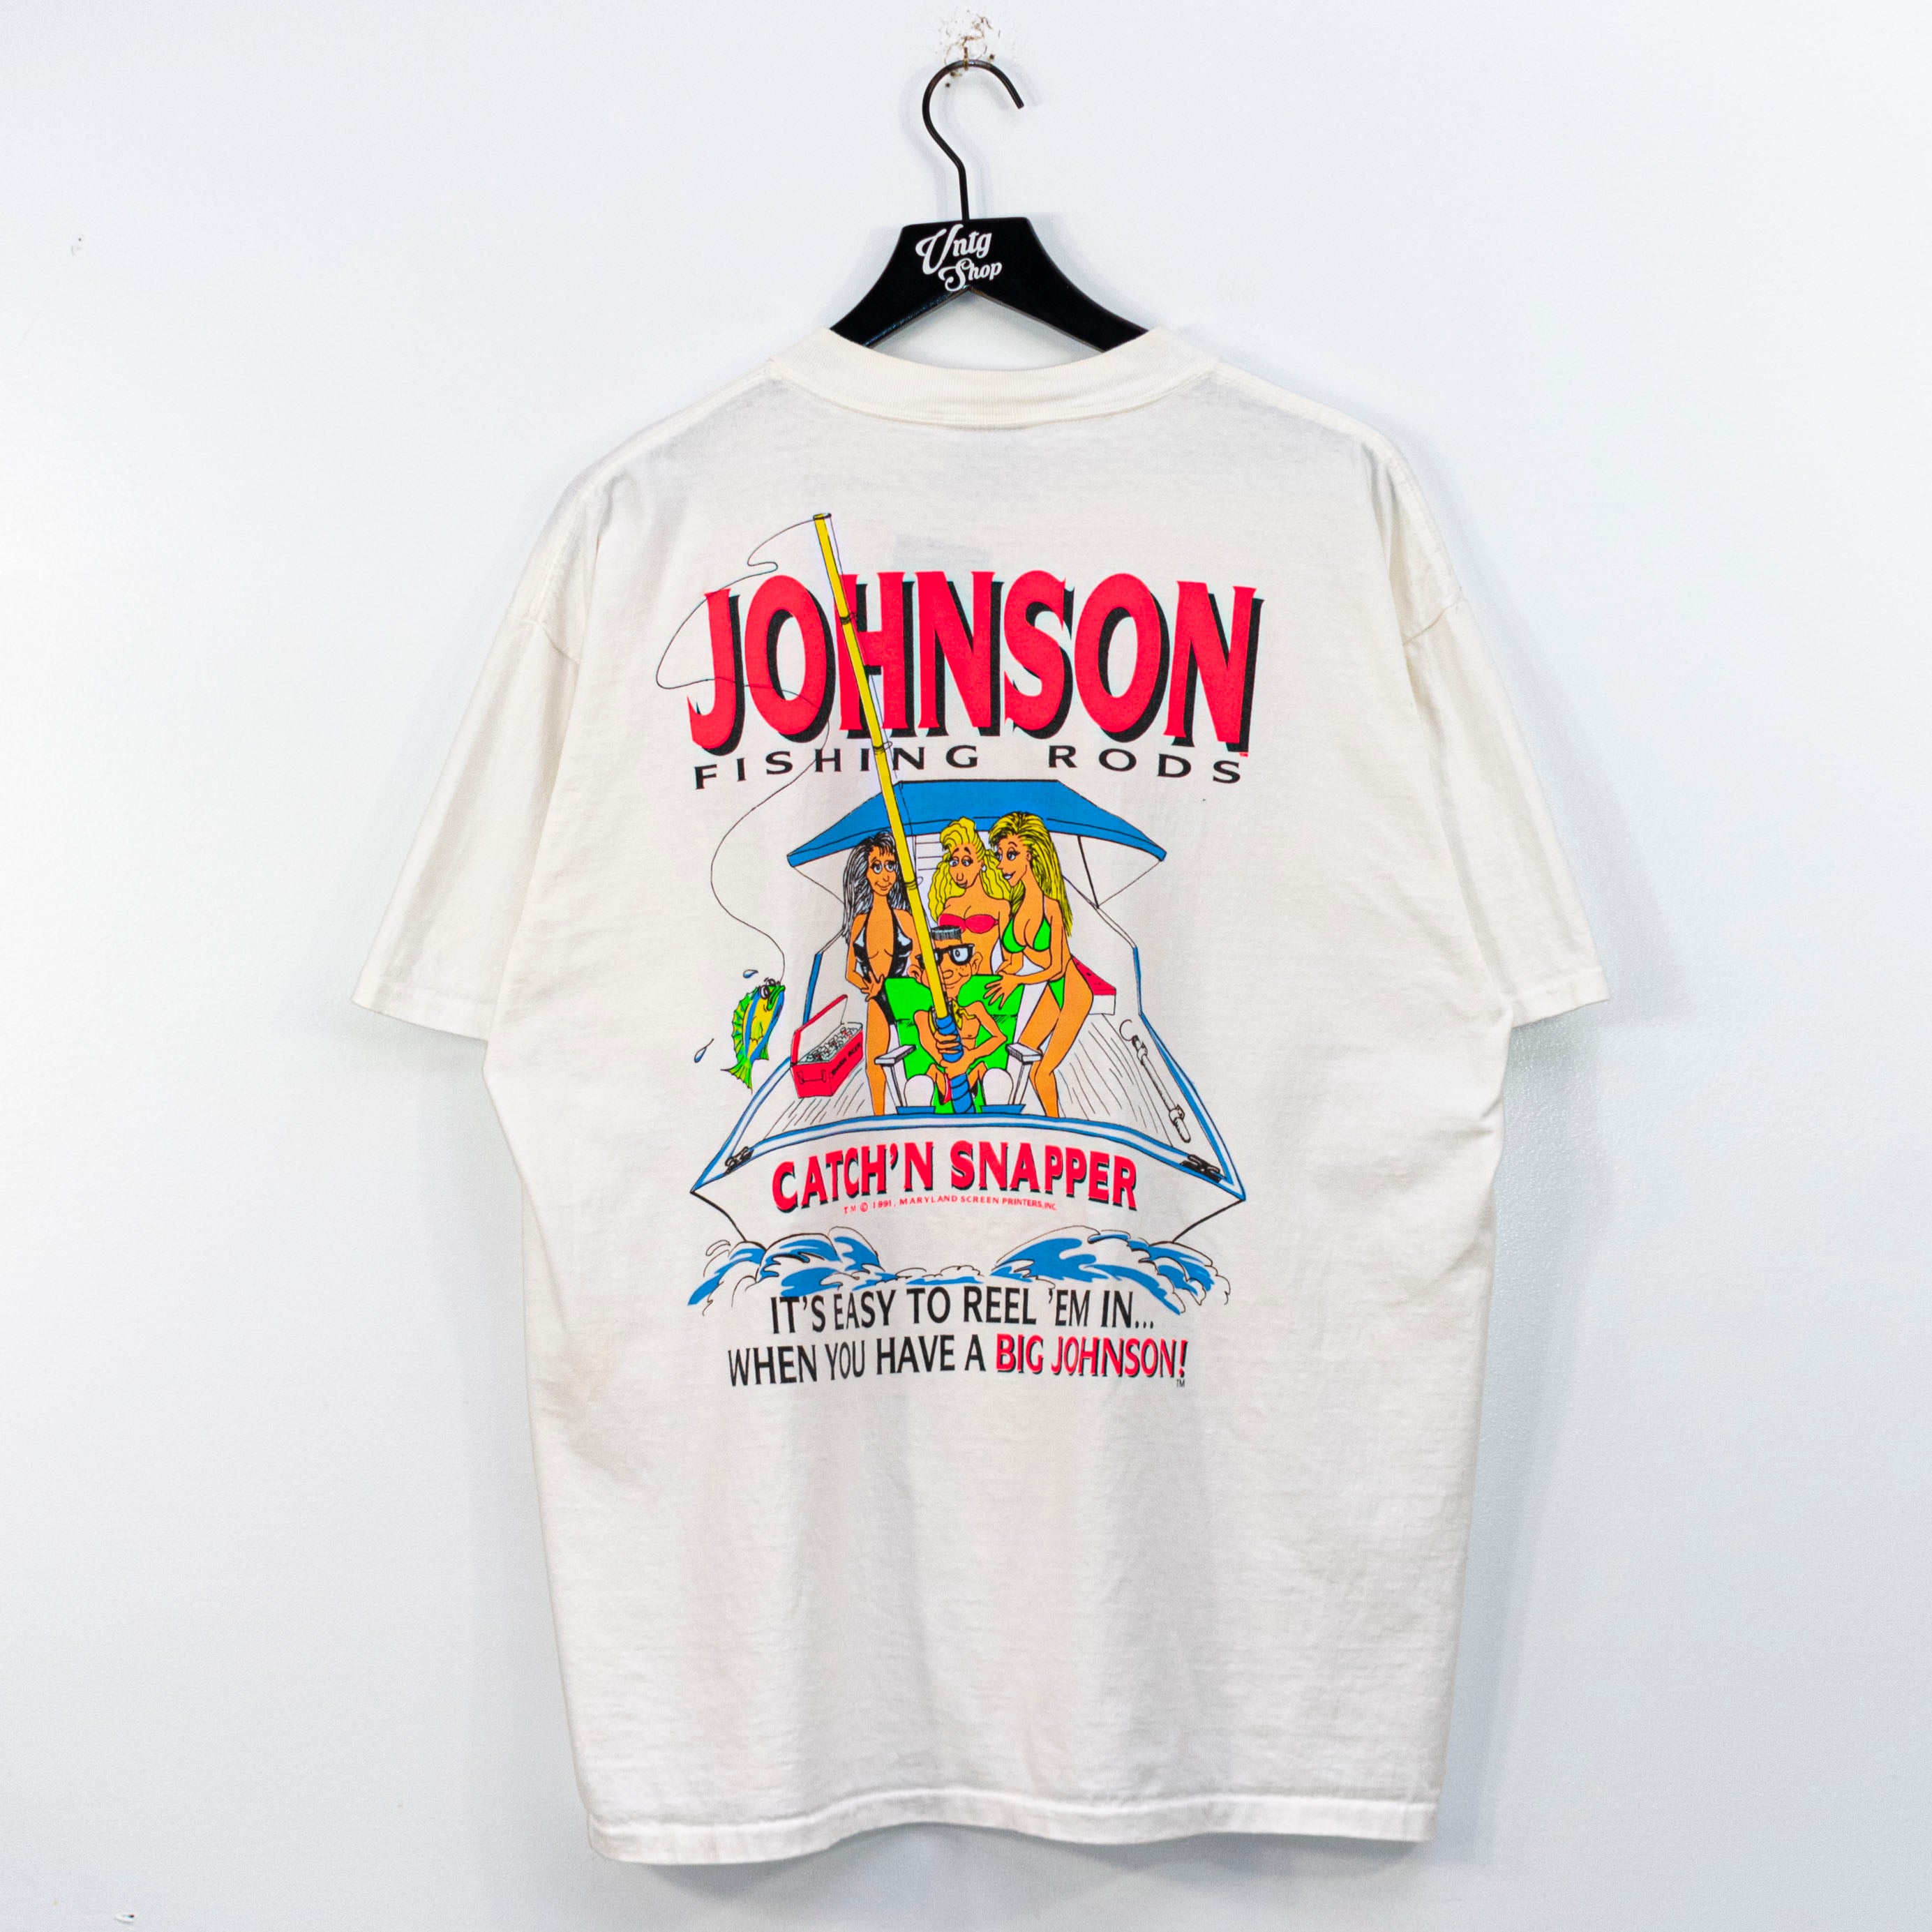 Big Johnson Fishing Rods T Shirt